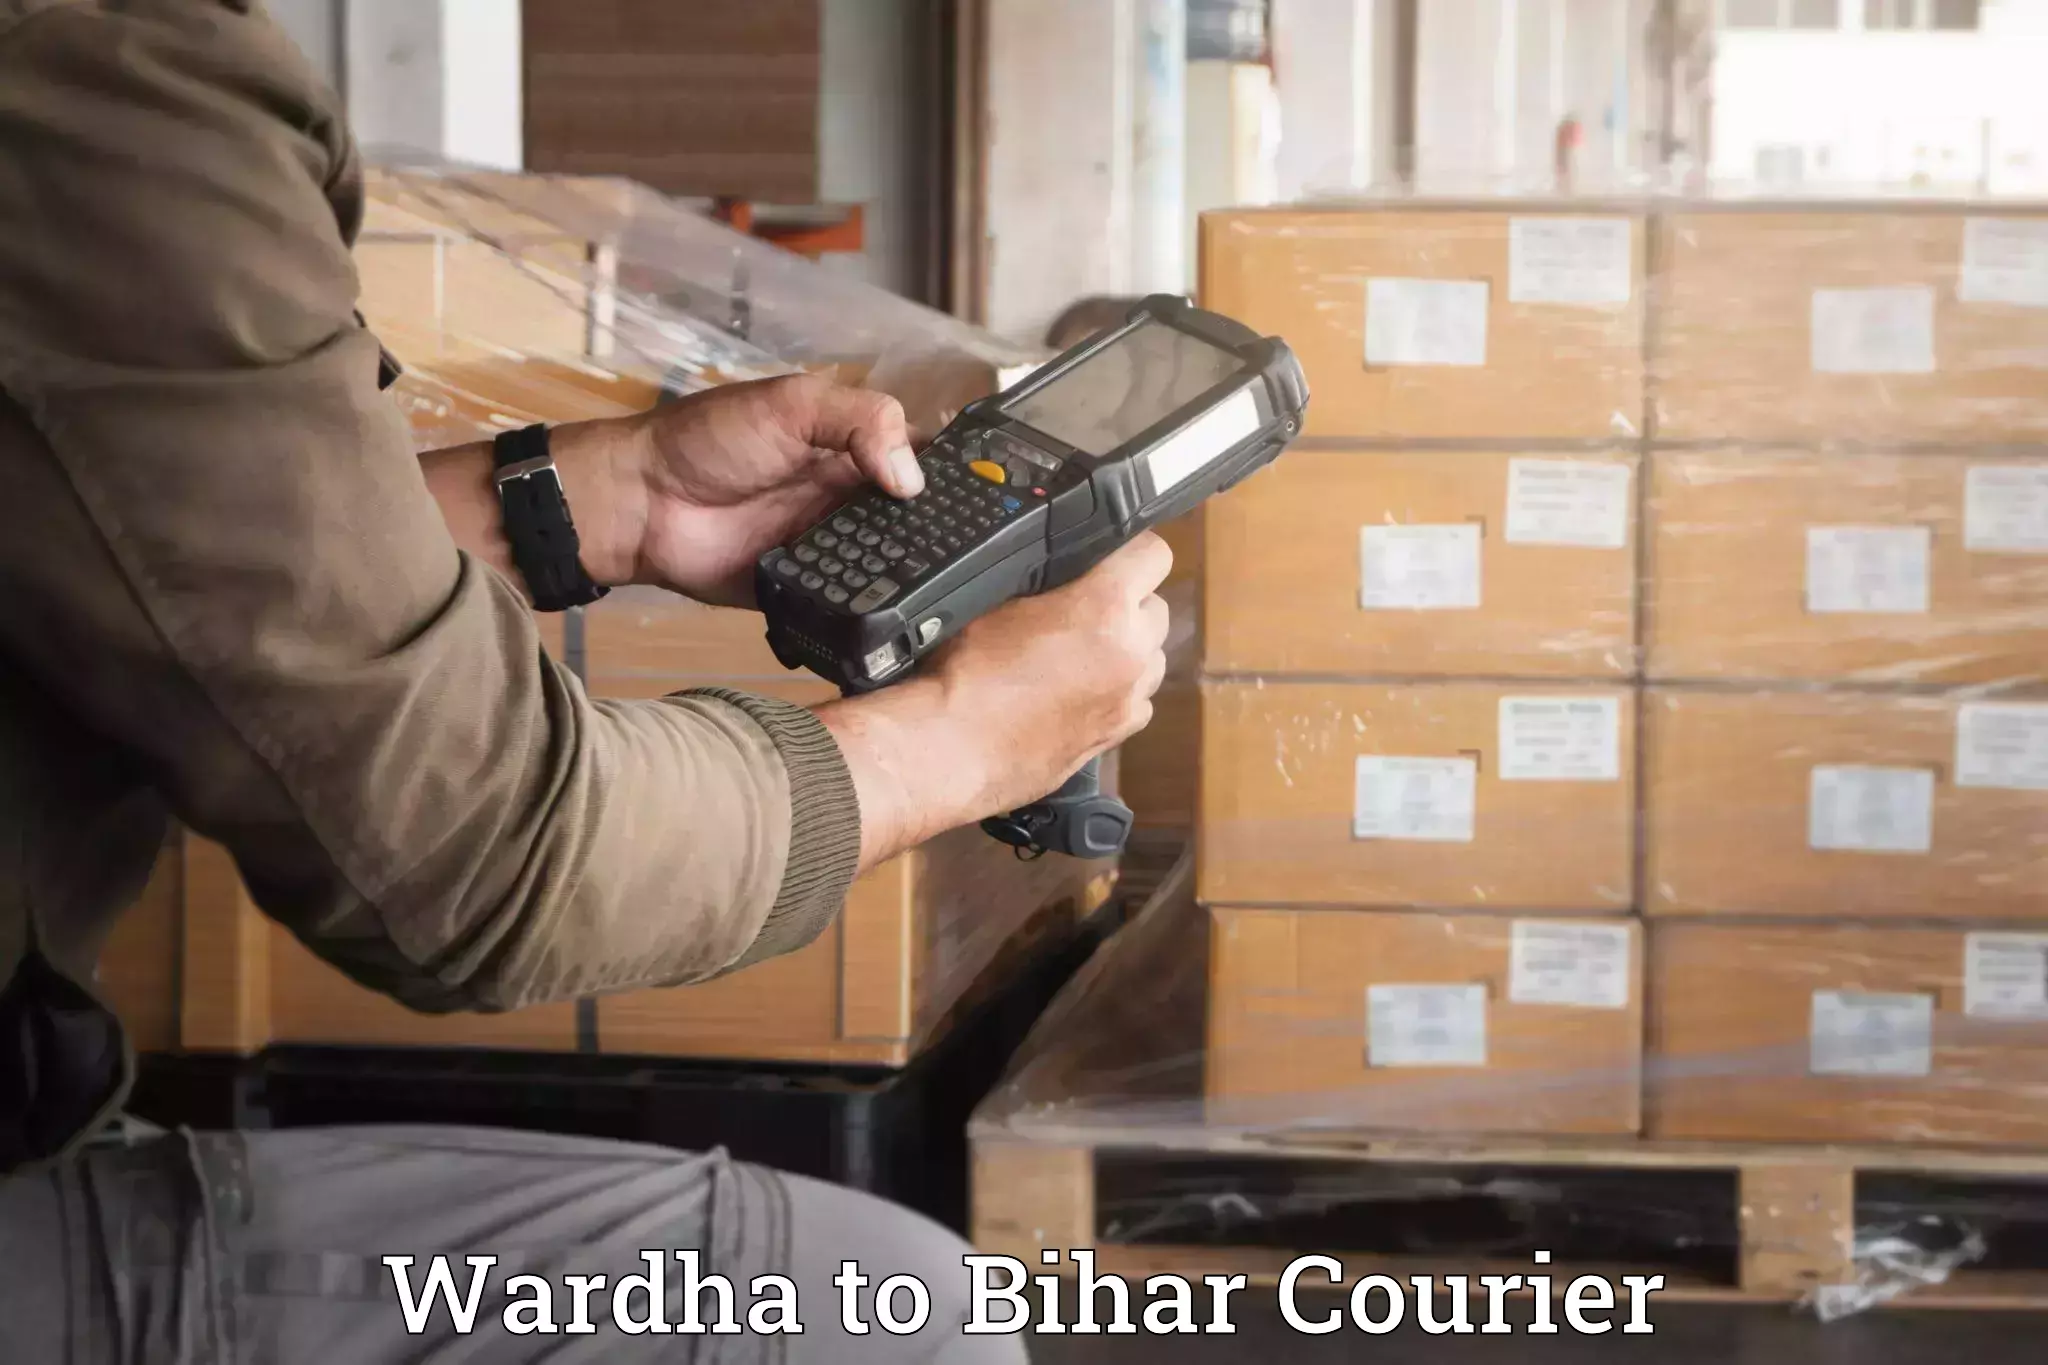 Baggage relocation service Wardha to Bihar